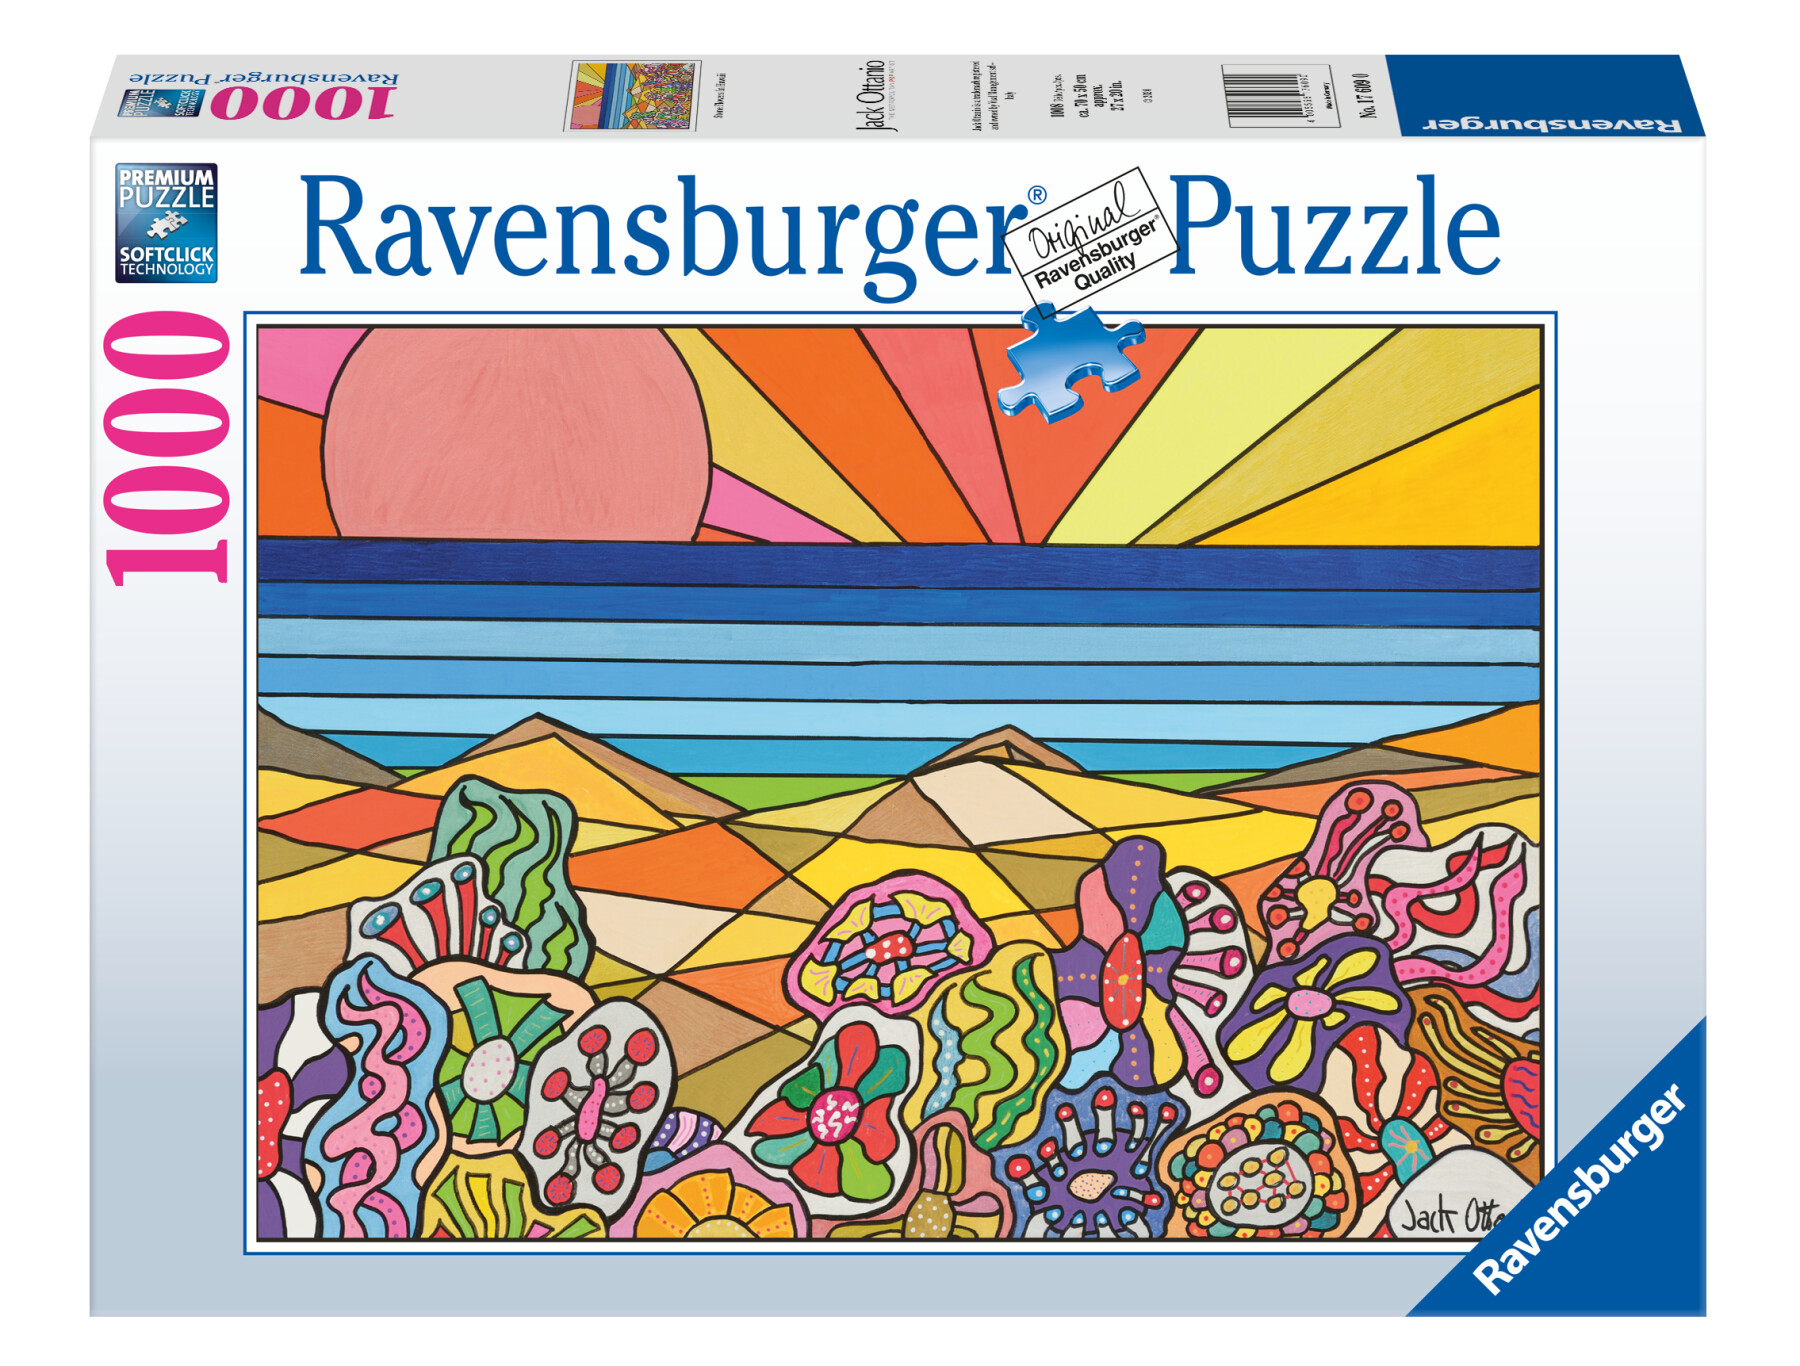 Ravensburger - puzzle hawaii by jack ottanio, 1000 pezzi, puzzle adulti - RAVENSBURGER